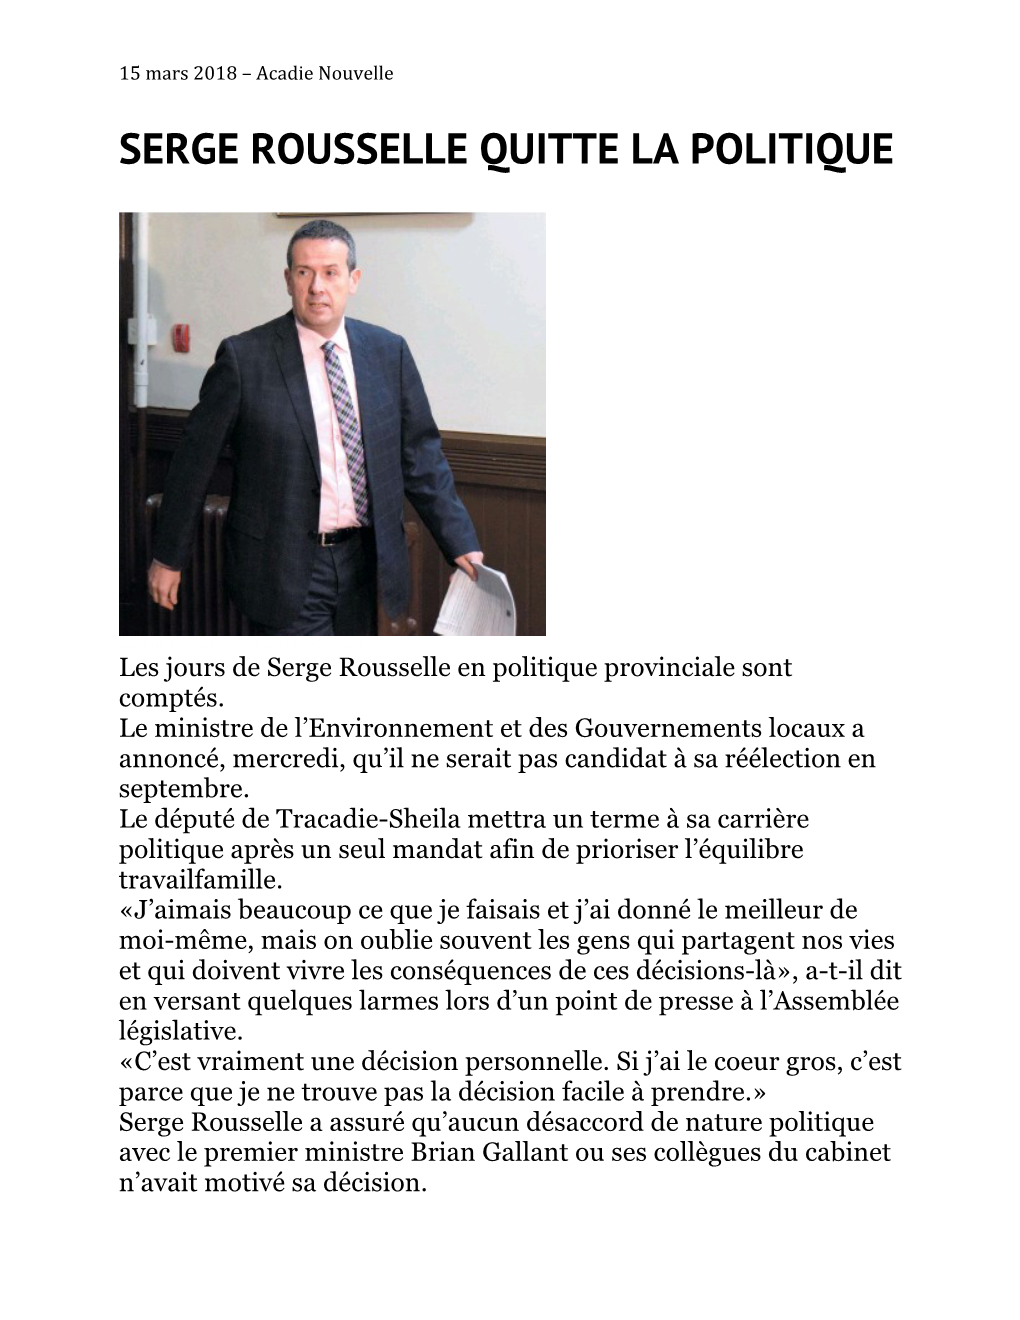 Serge Rousselle Quitte La Politique